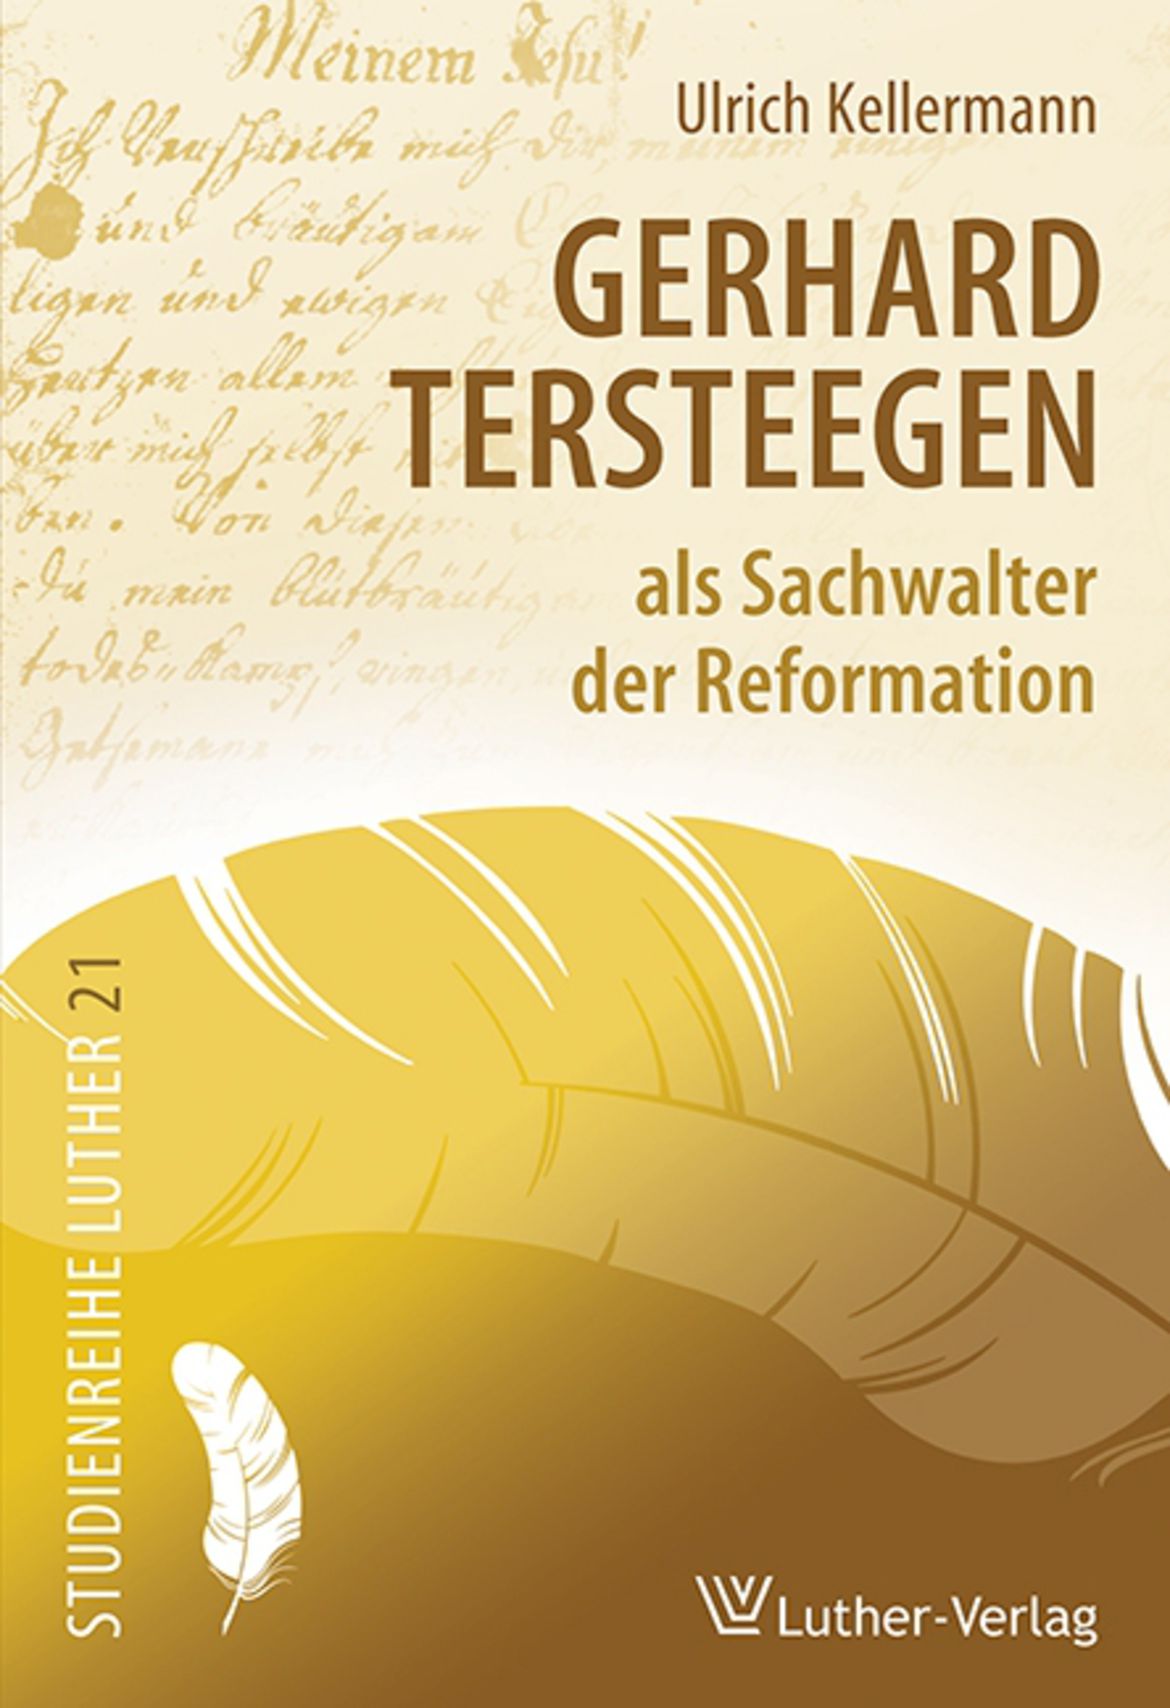 Ulrich Kellermann, Gerhard Tersteegen - als Sachwalter der Reformation